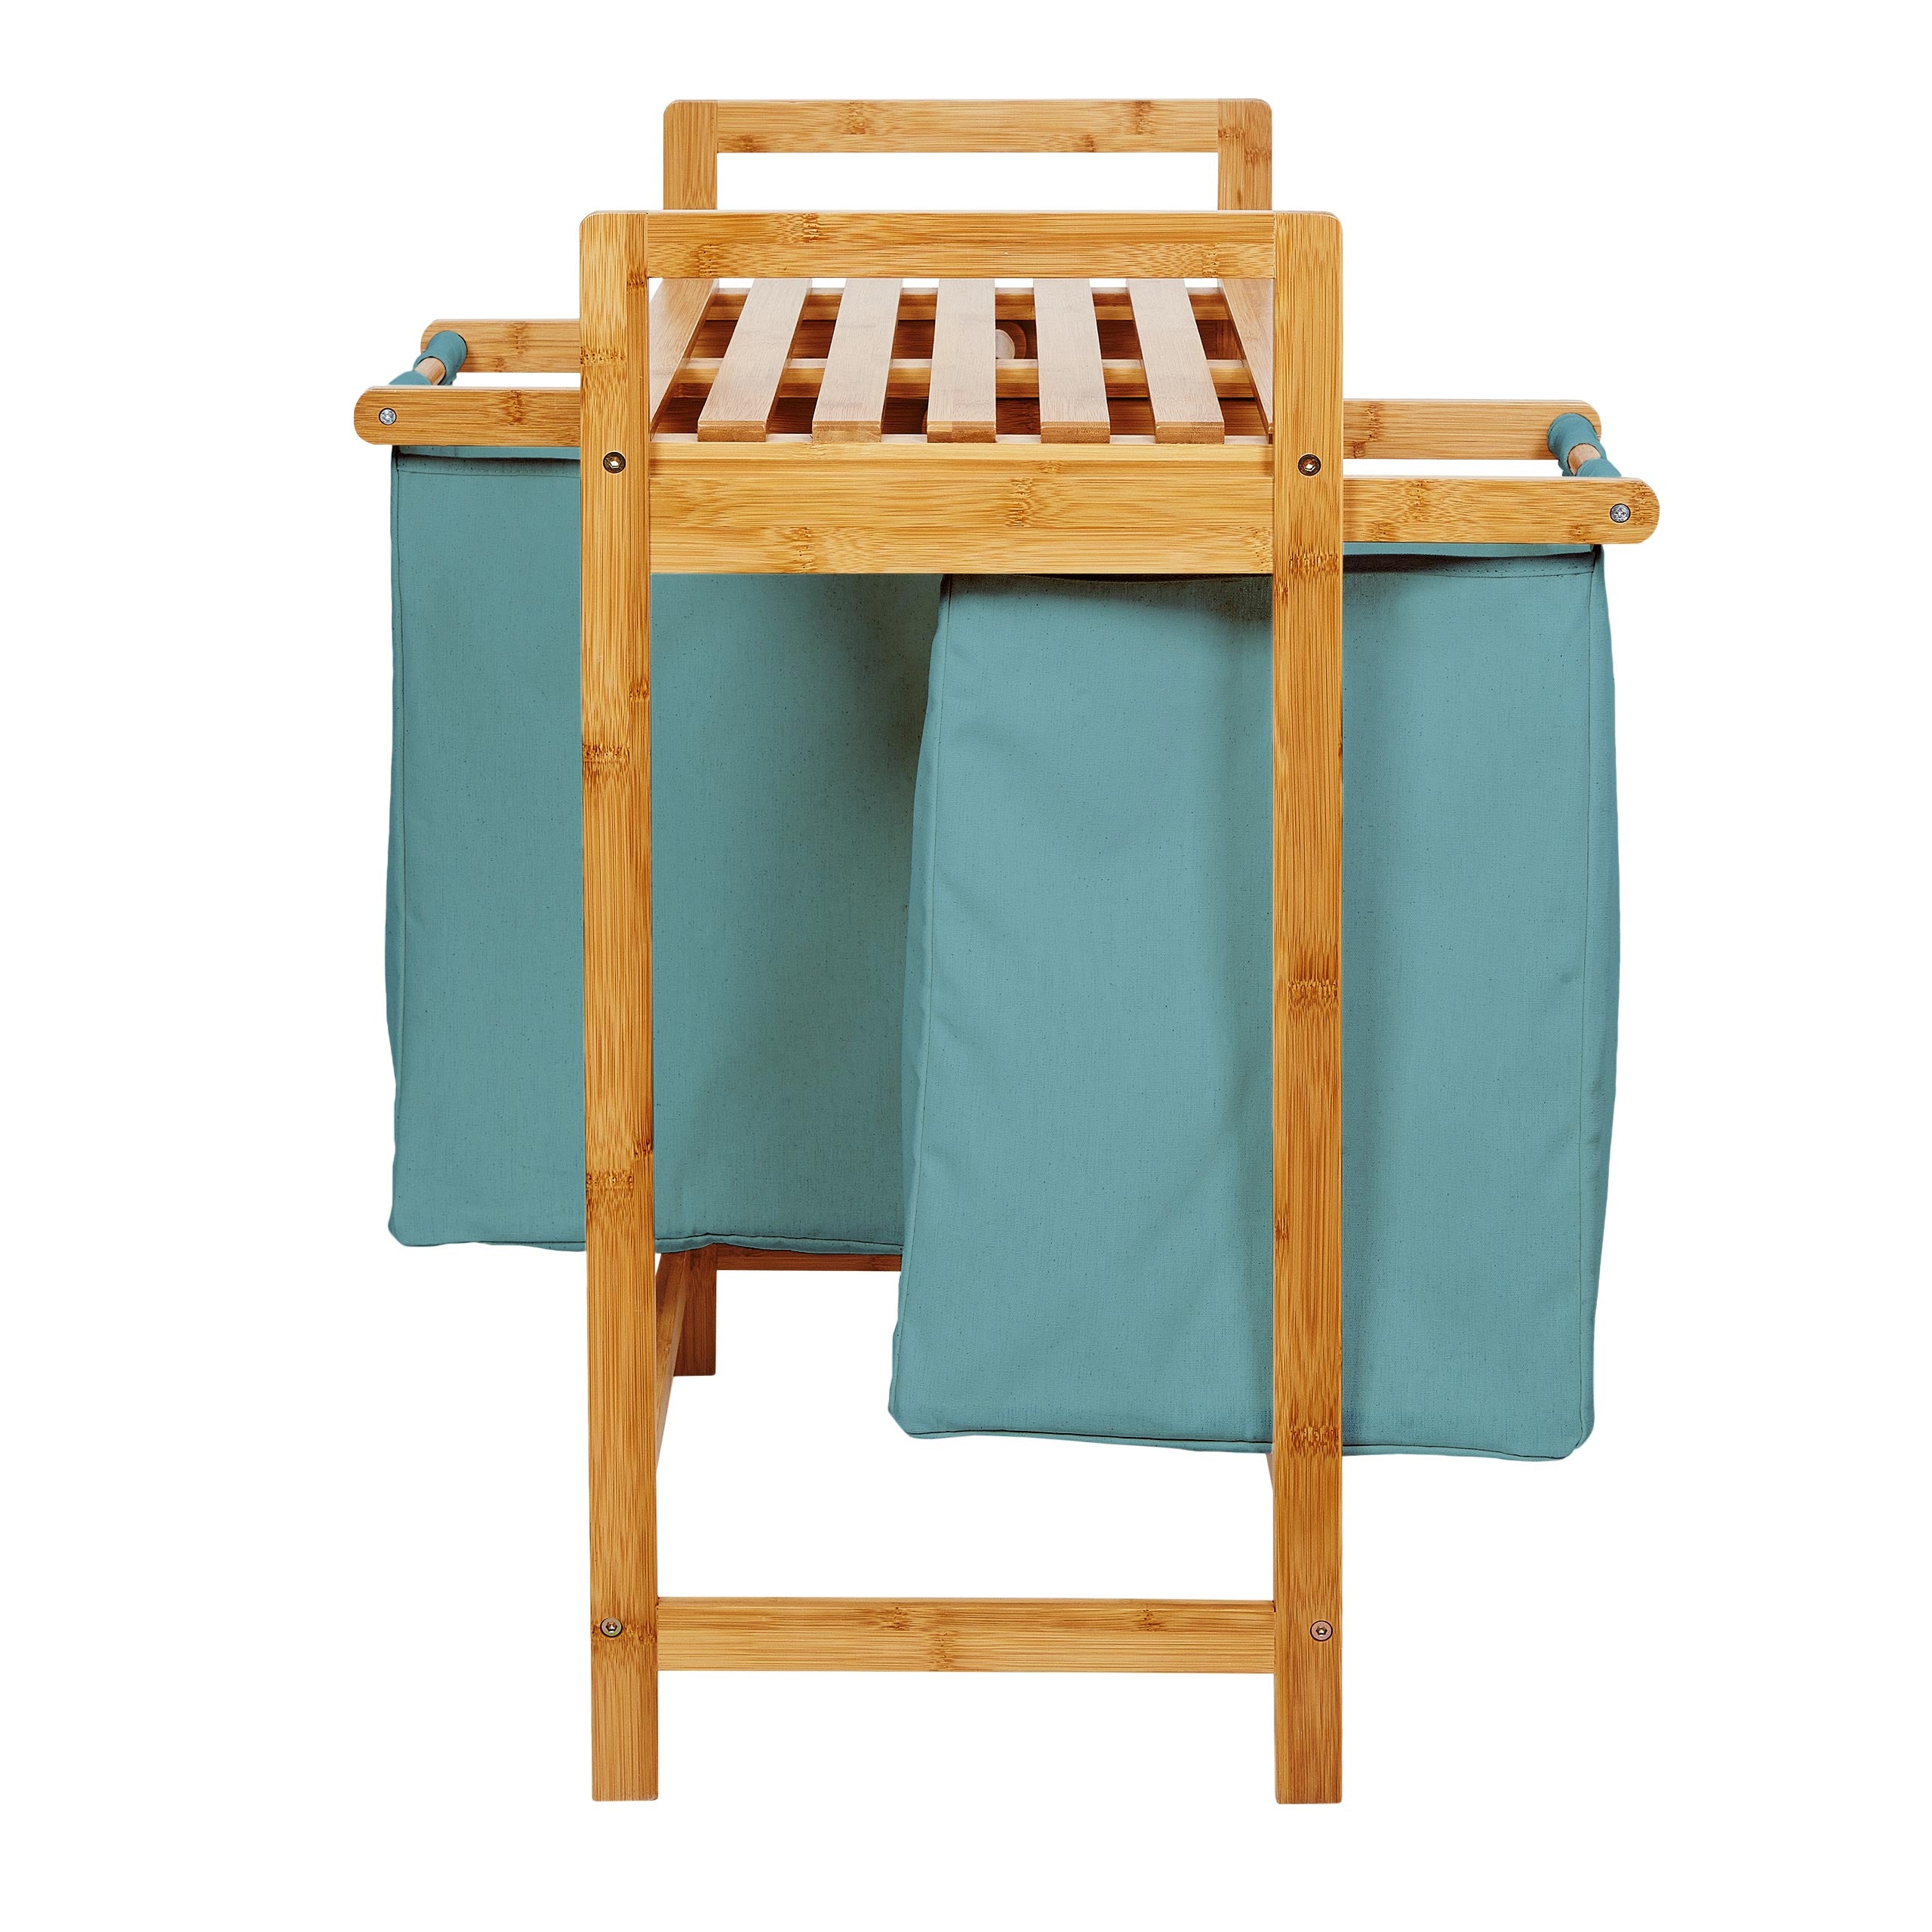 Bambus Wäschekorb mit 2 ausziehbaren Wäschesacken - 73 x 64 x 33 cm - Babyblau